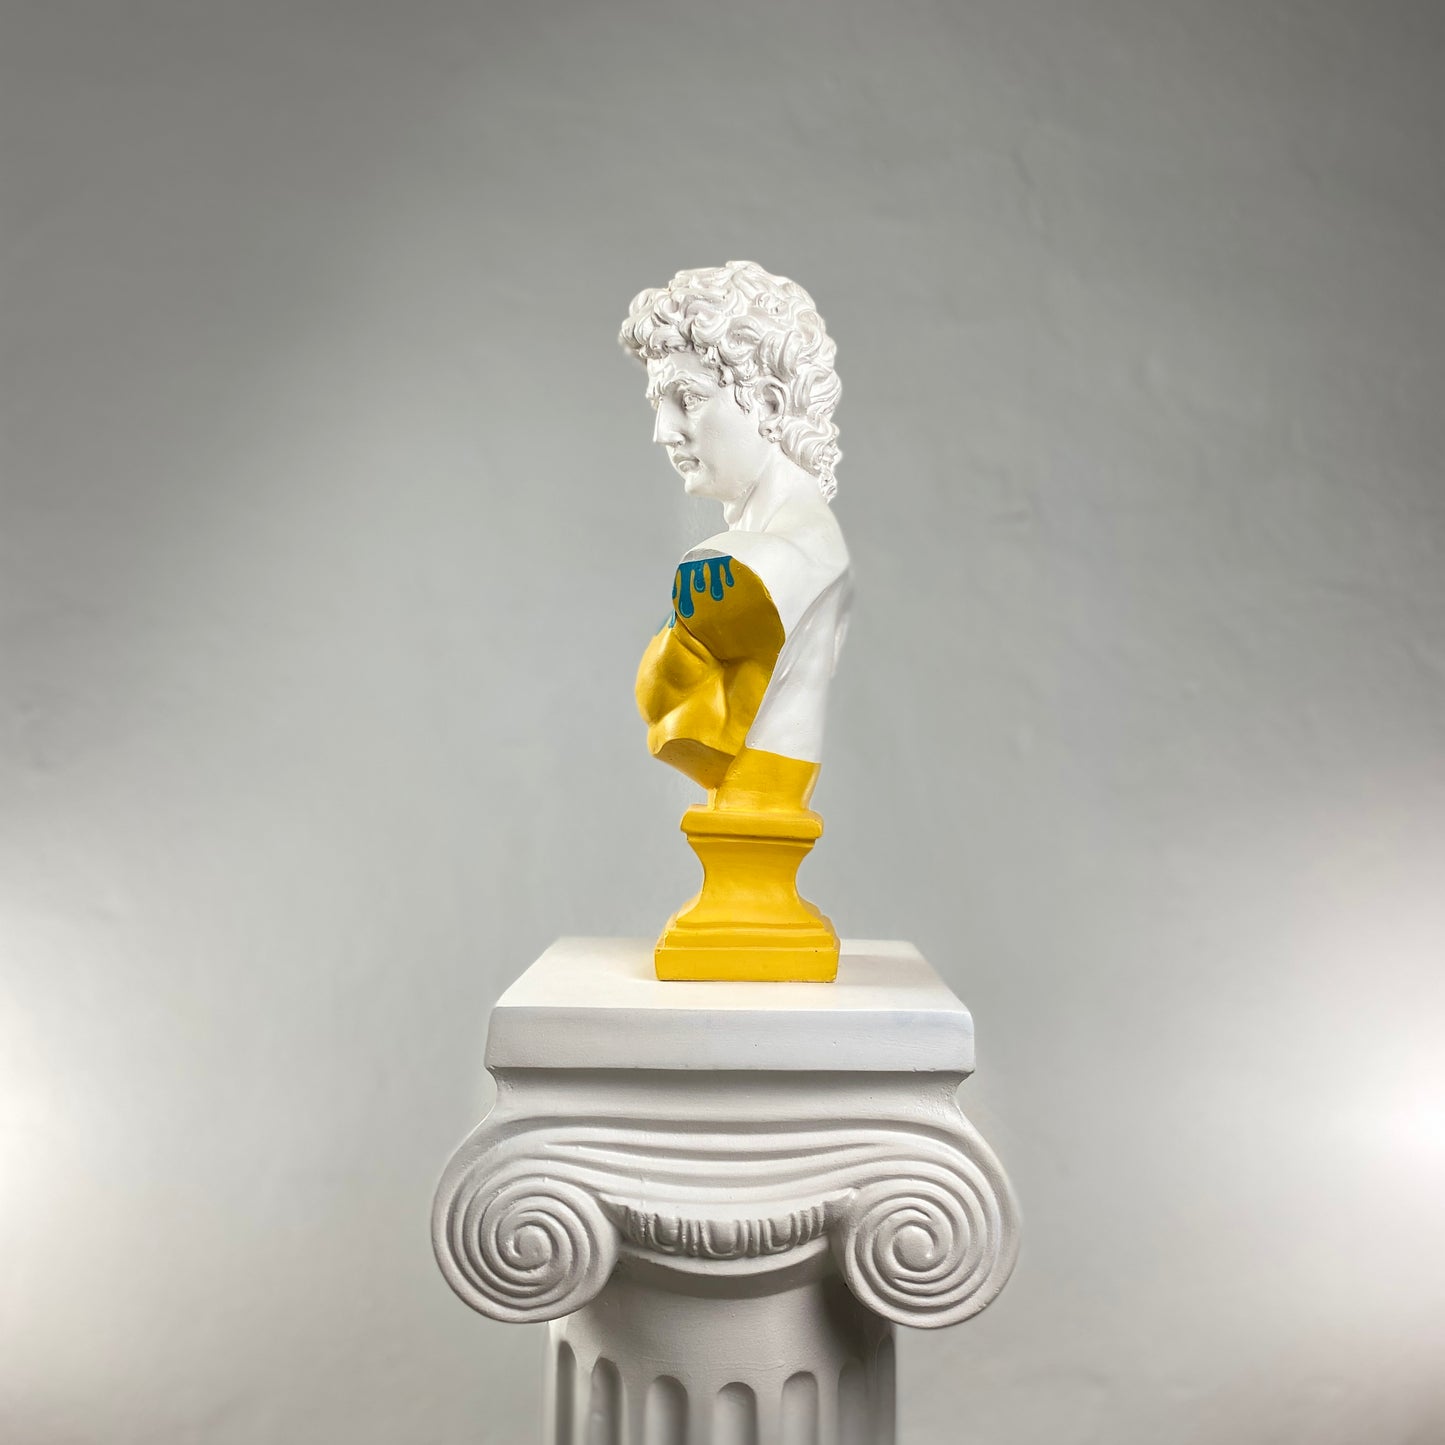 David 'Leak' Pop Art Sculpture, Modern Home Decor, Large Sculpture